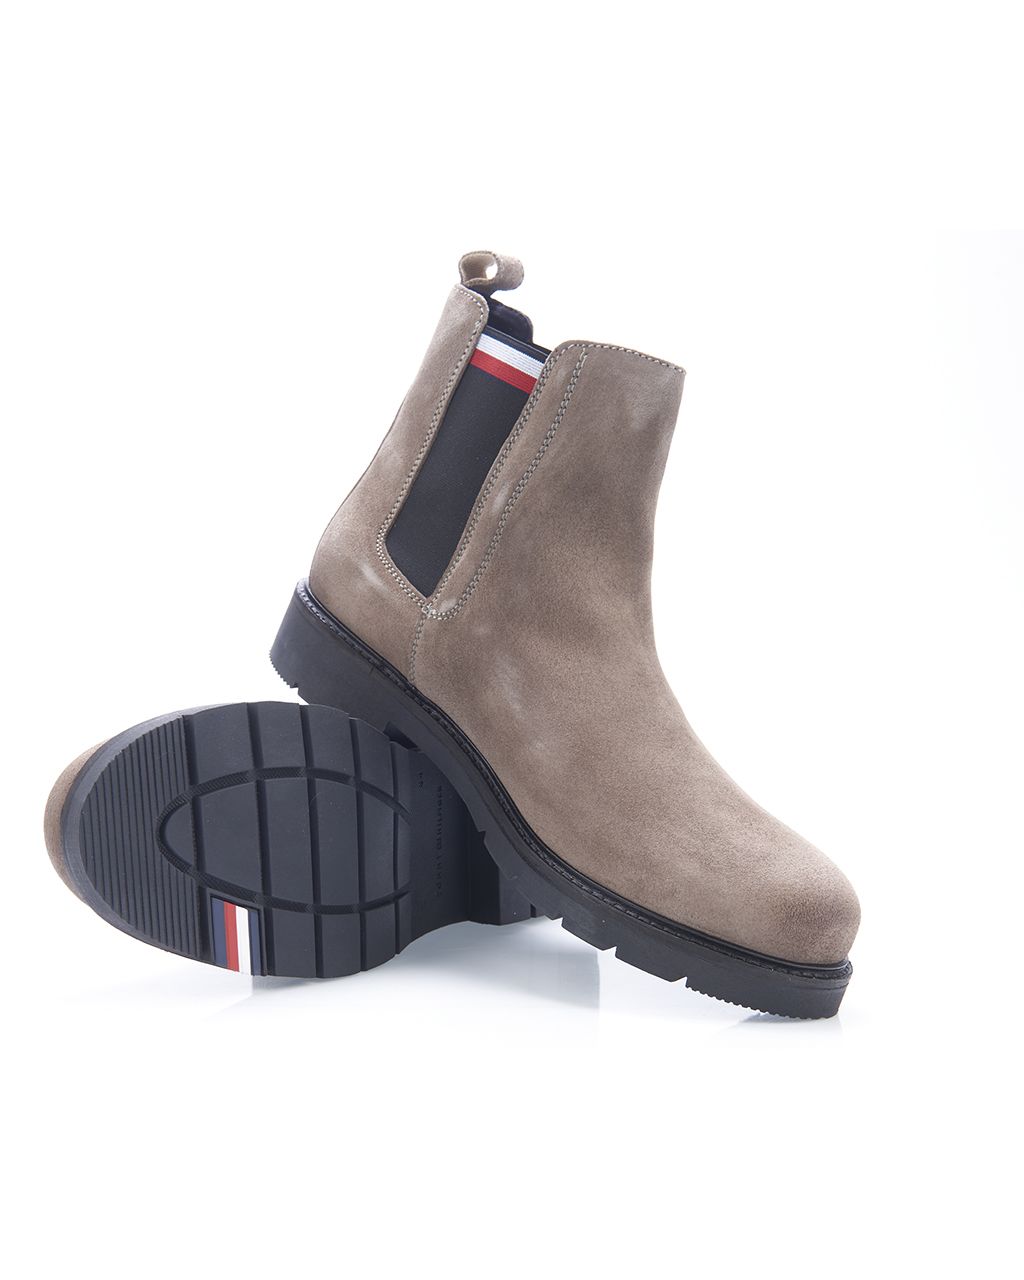 Tommy Hilfiger Menswear Boots Licht bruin 082261-001-41